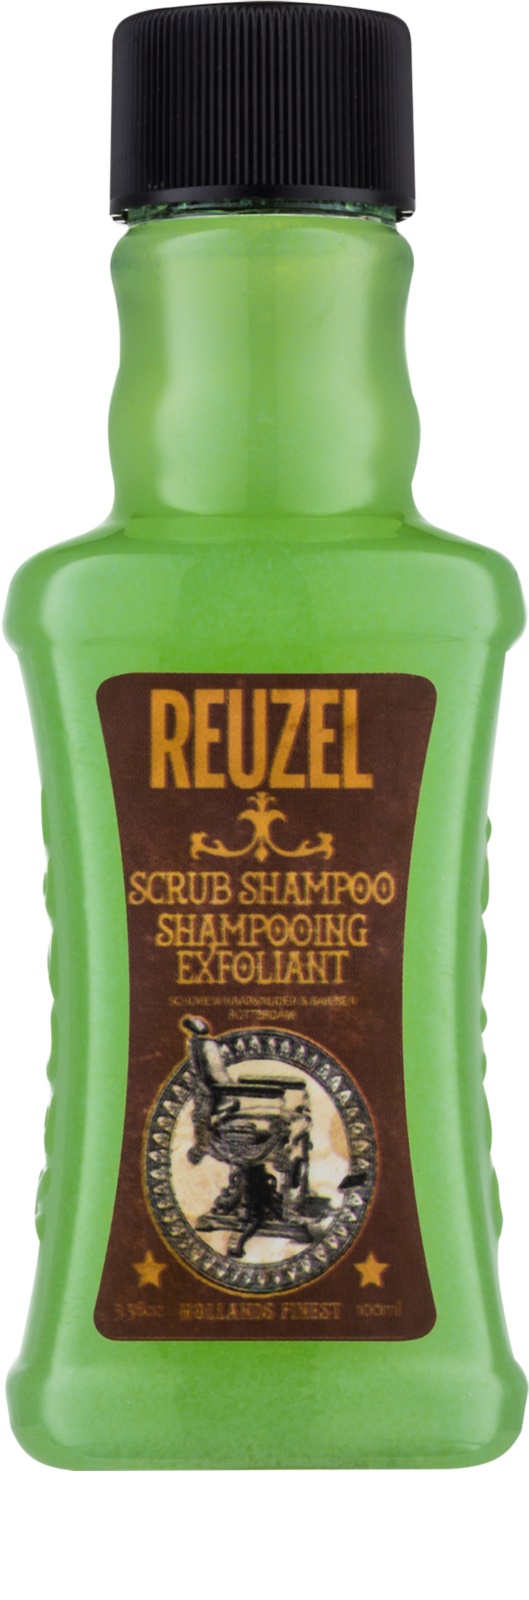 REUZEL Scrub Shampoo 100 ml